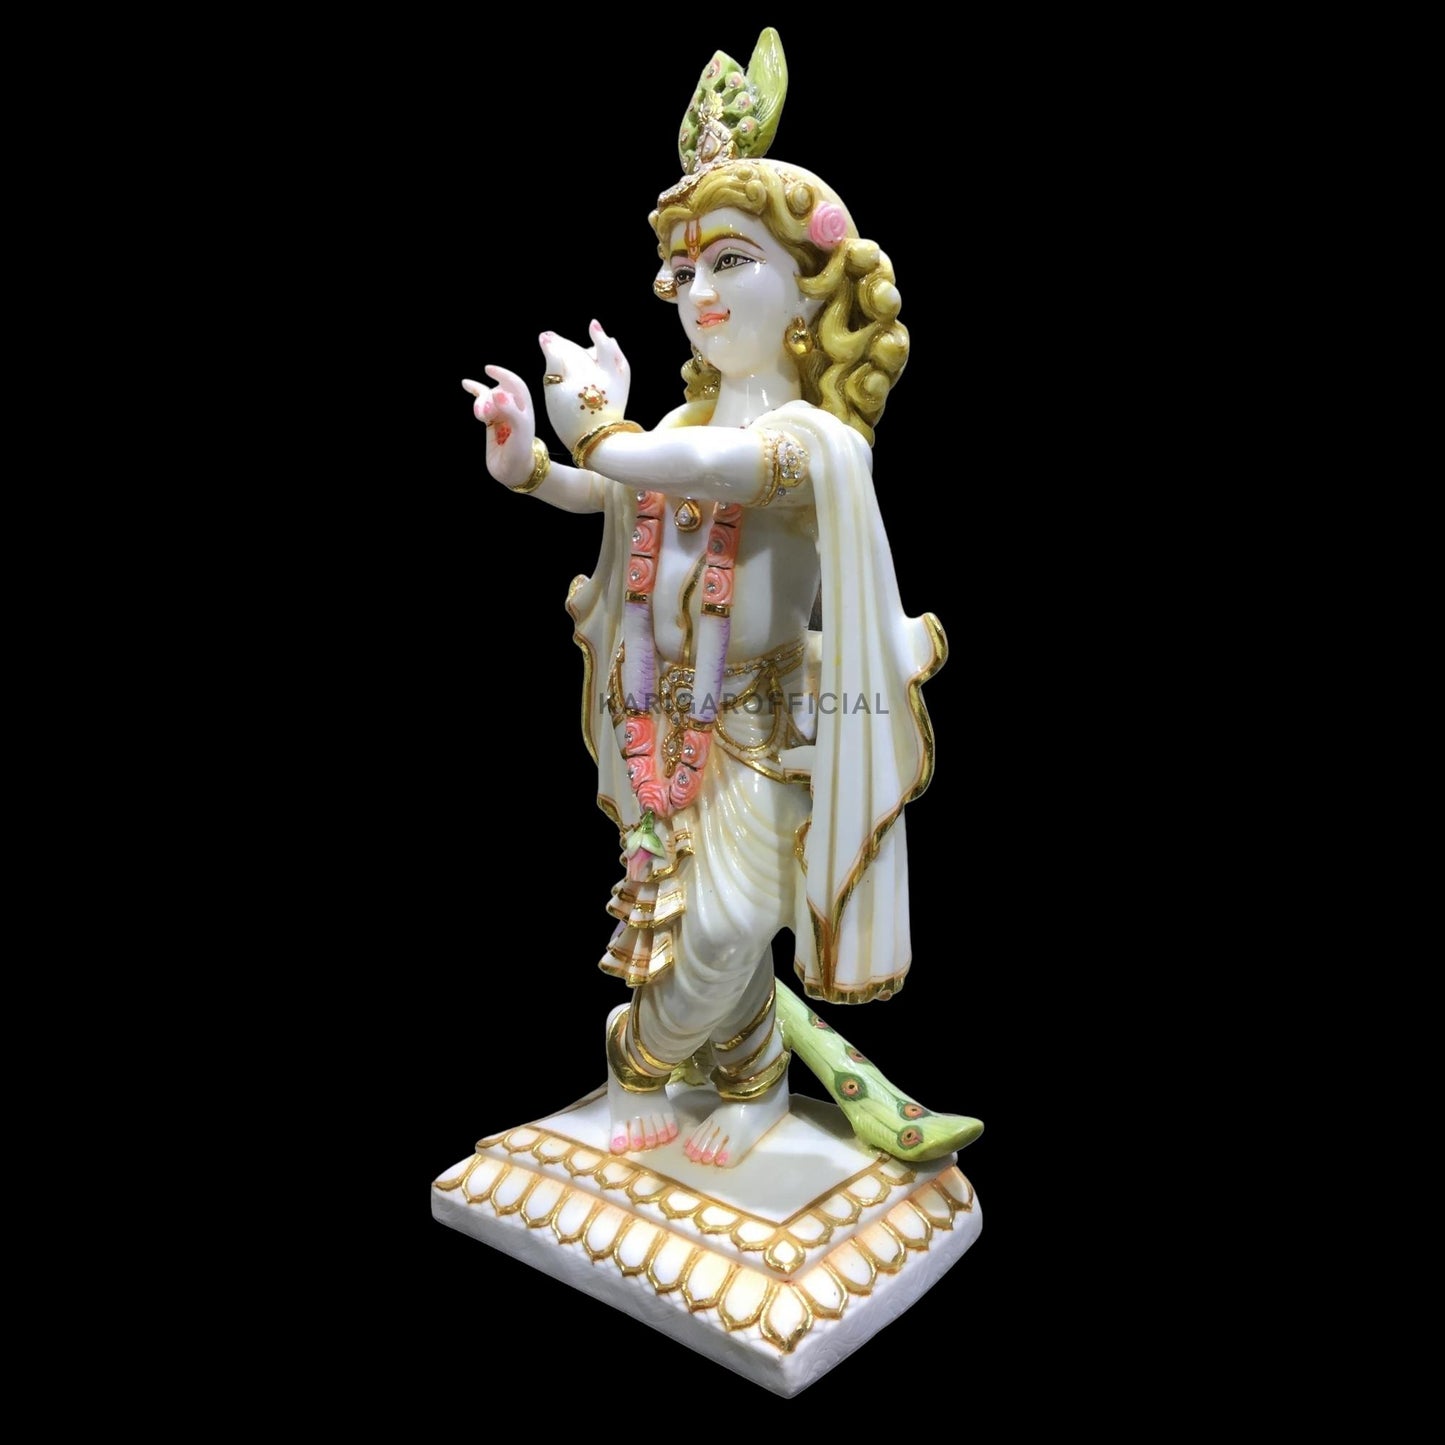 Estatua de Krishna, ídolo de Krishna grande de 24.0 in, joyería de piedra con tachuelas de mármol, figura de Krishna, dios hindú pintado a mano Murlimanohar Murti, templo del hogar Pooja inauguración de la casa regalos de aniversario escultura